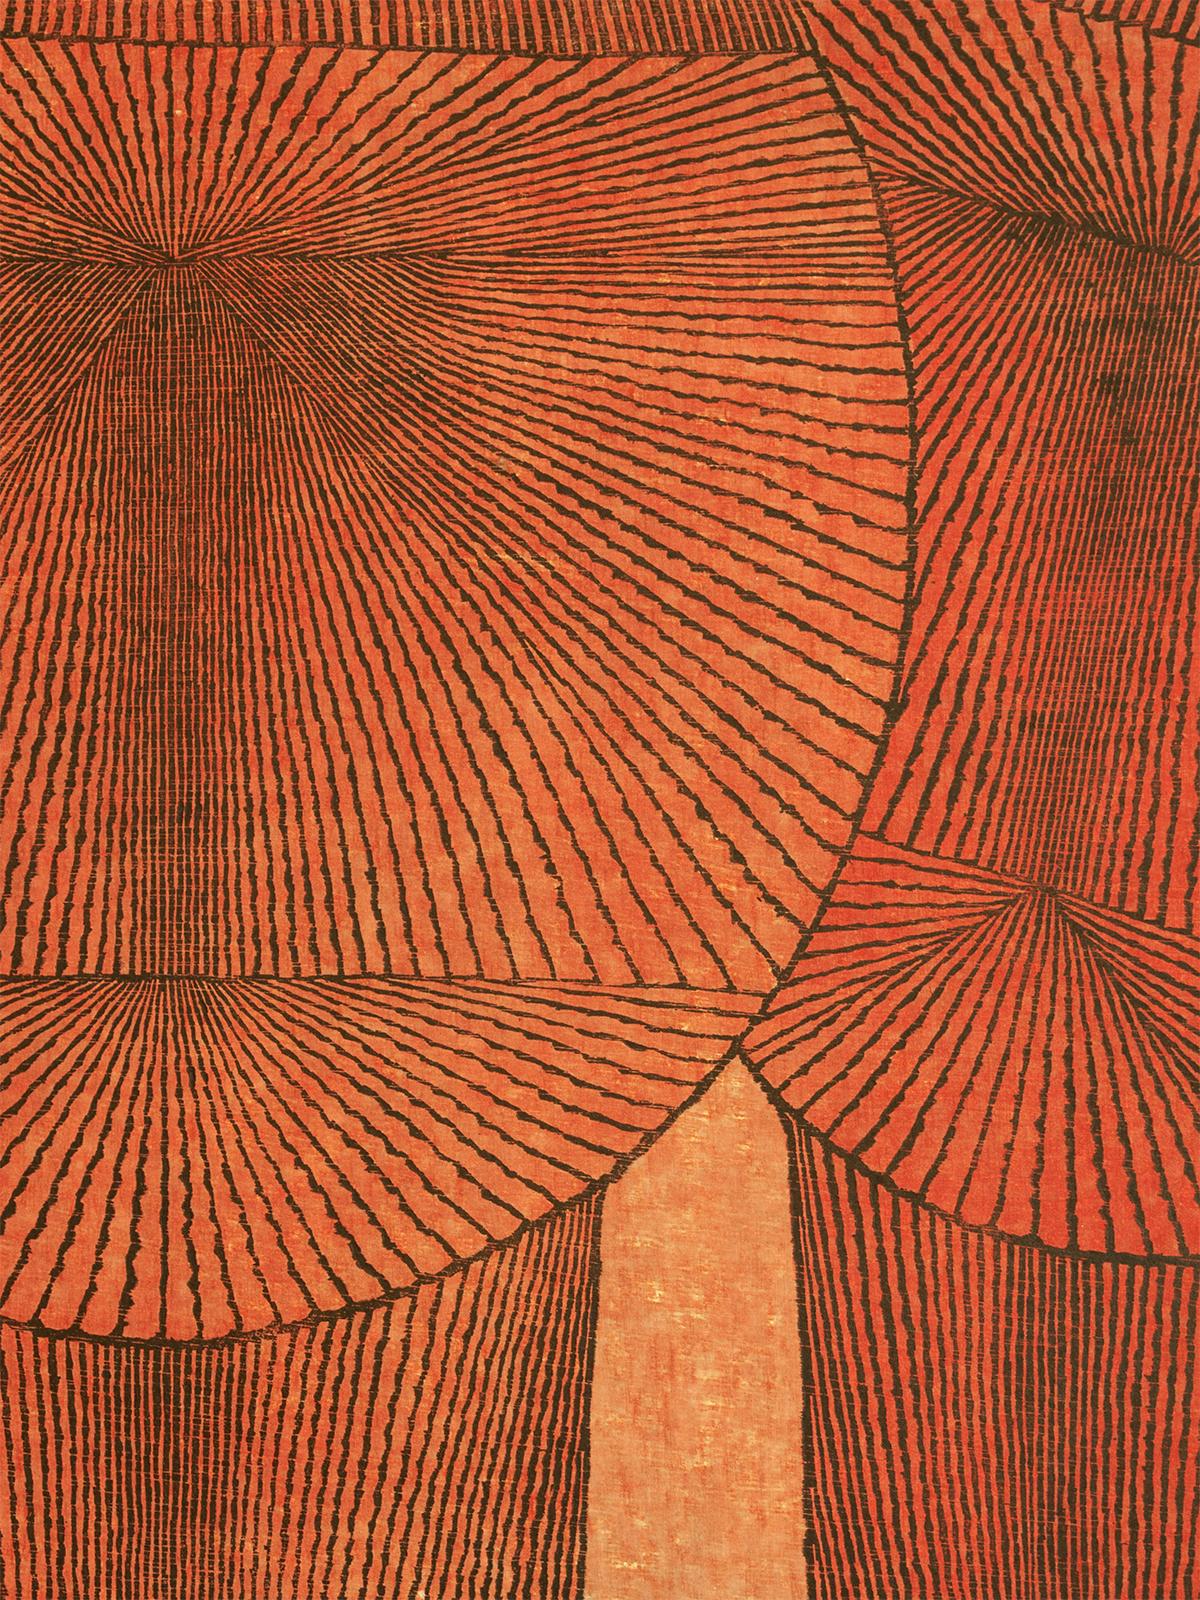 Tomio Kinoshita (1923 - 2014)
Big Boys, 1960
Gravure sur bois
Taille de l'image : 32.75 de haut par 22 pouces de large (83 par 56 cm)
Taille du papier : 35,5 pouces de haut par 23,75 pouces de large (90 par 60,3 cm)
Signé : au crayon en bas à